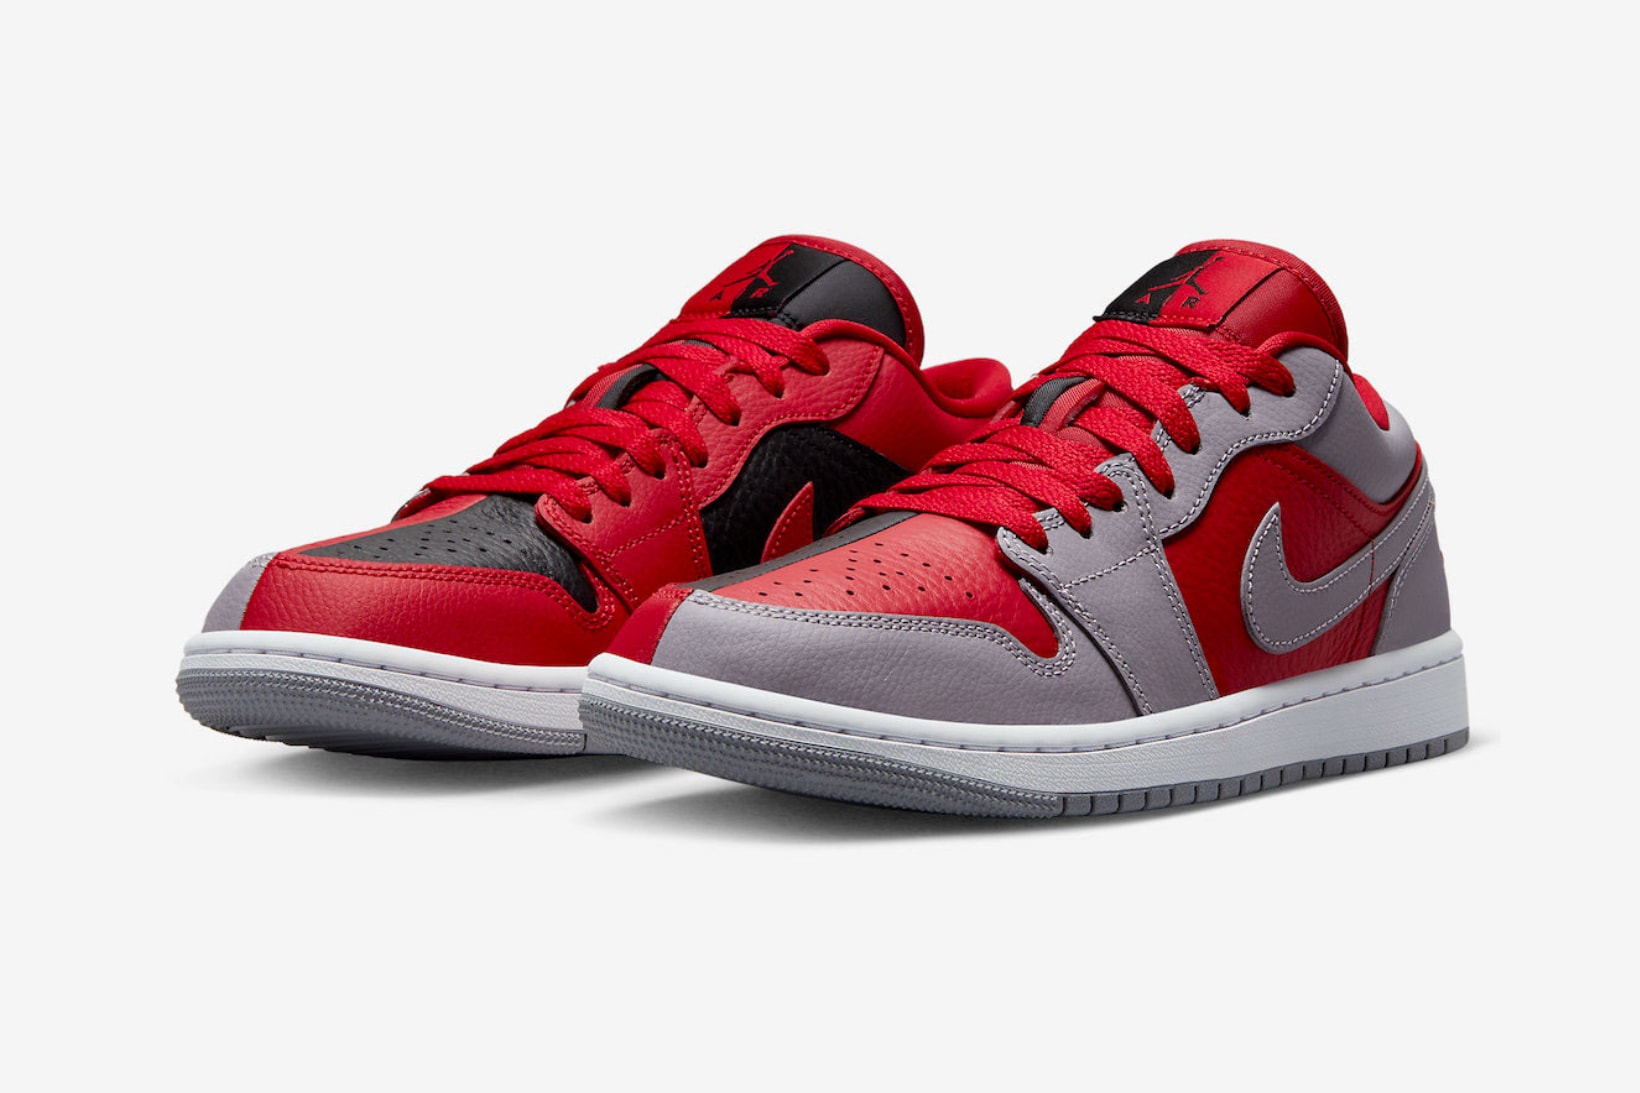 Nike Air Jordan 1 Low SE “Split” Release Info